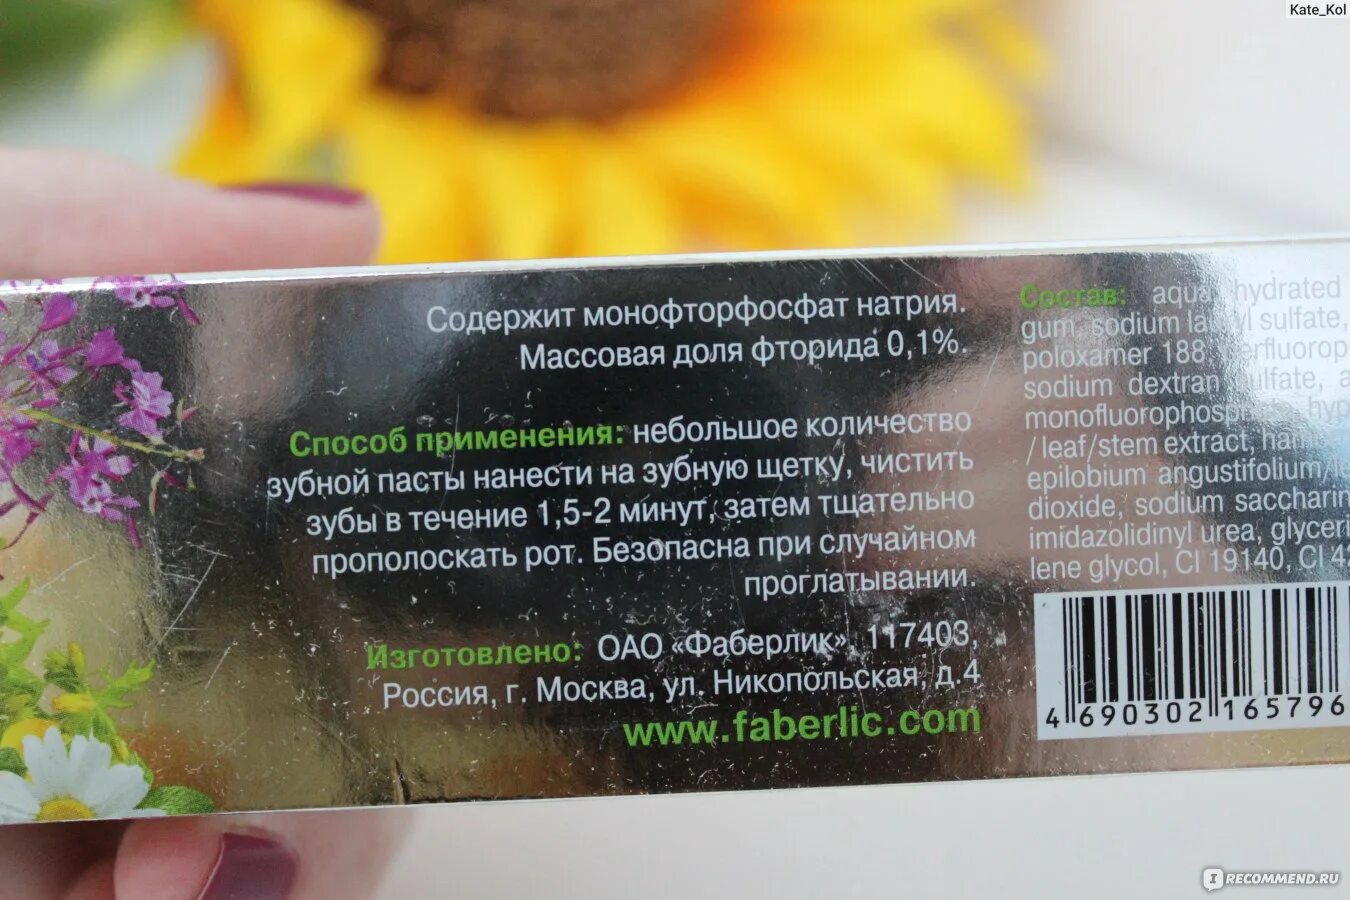 Монофторфосфат натрия. Faberlic лечебные травы состав.